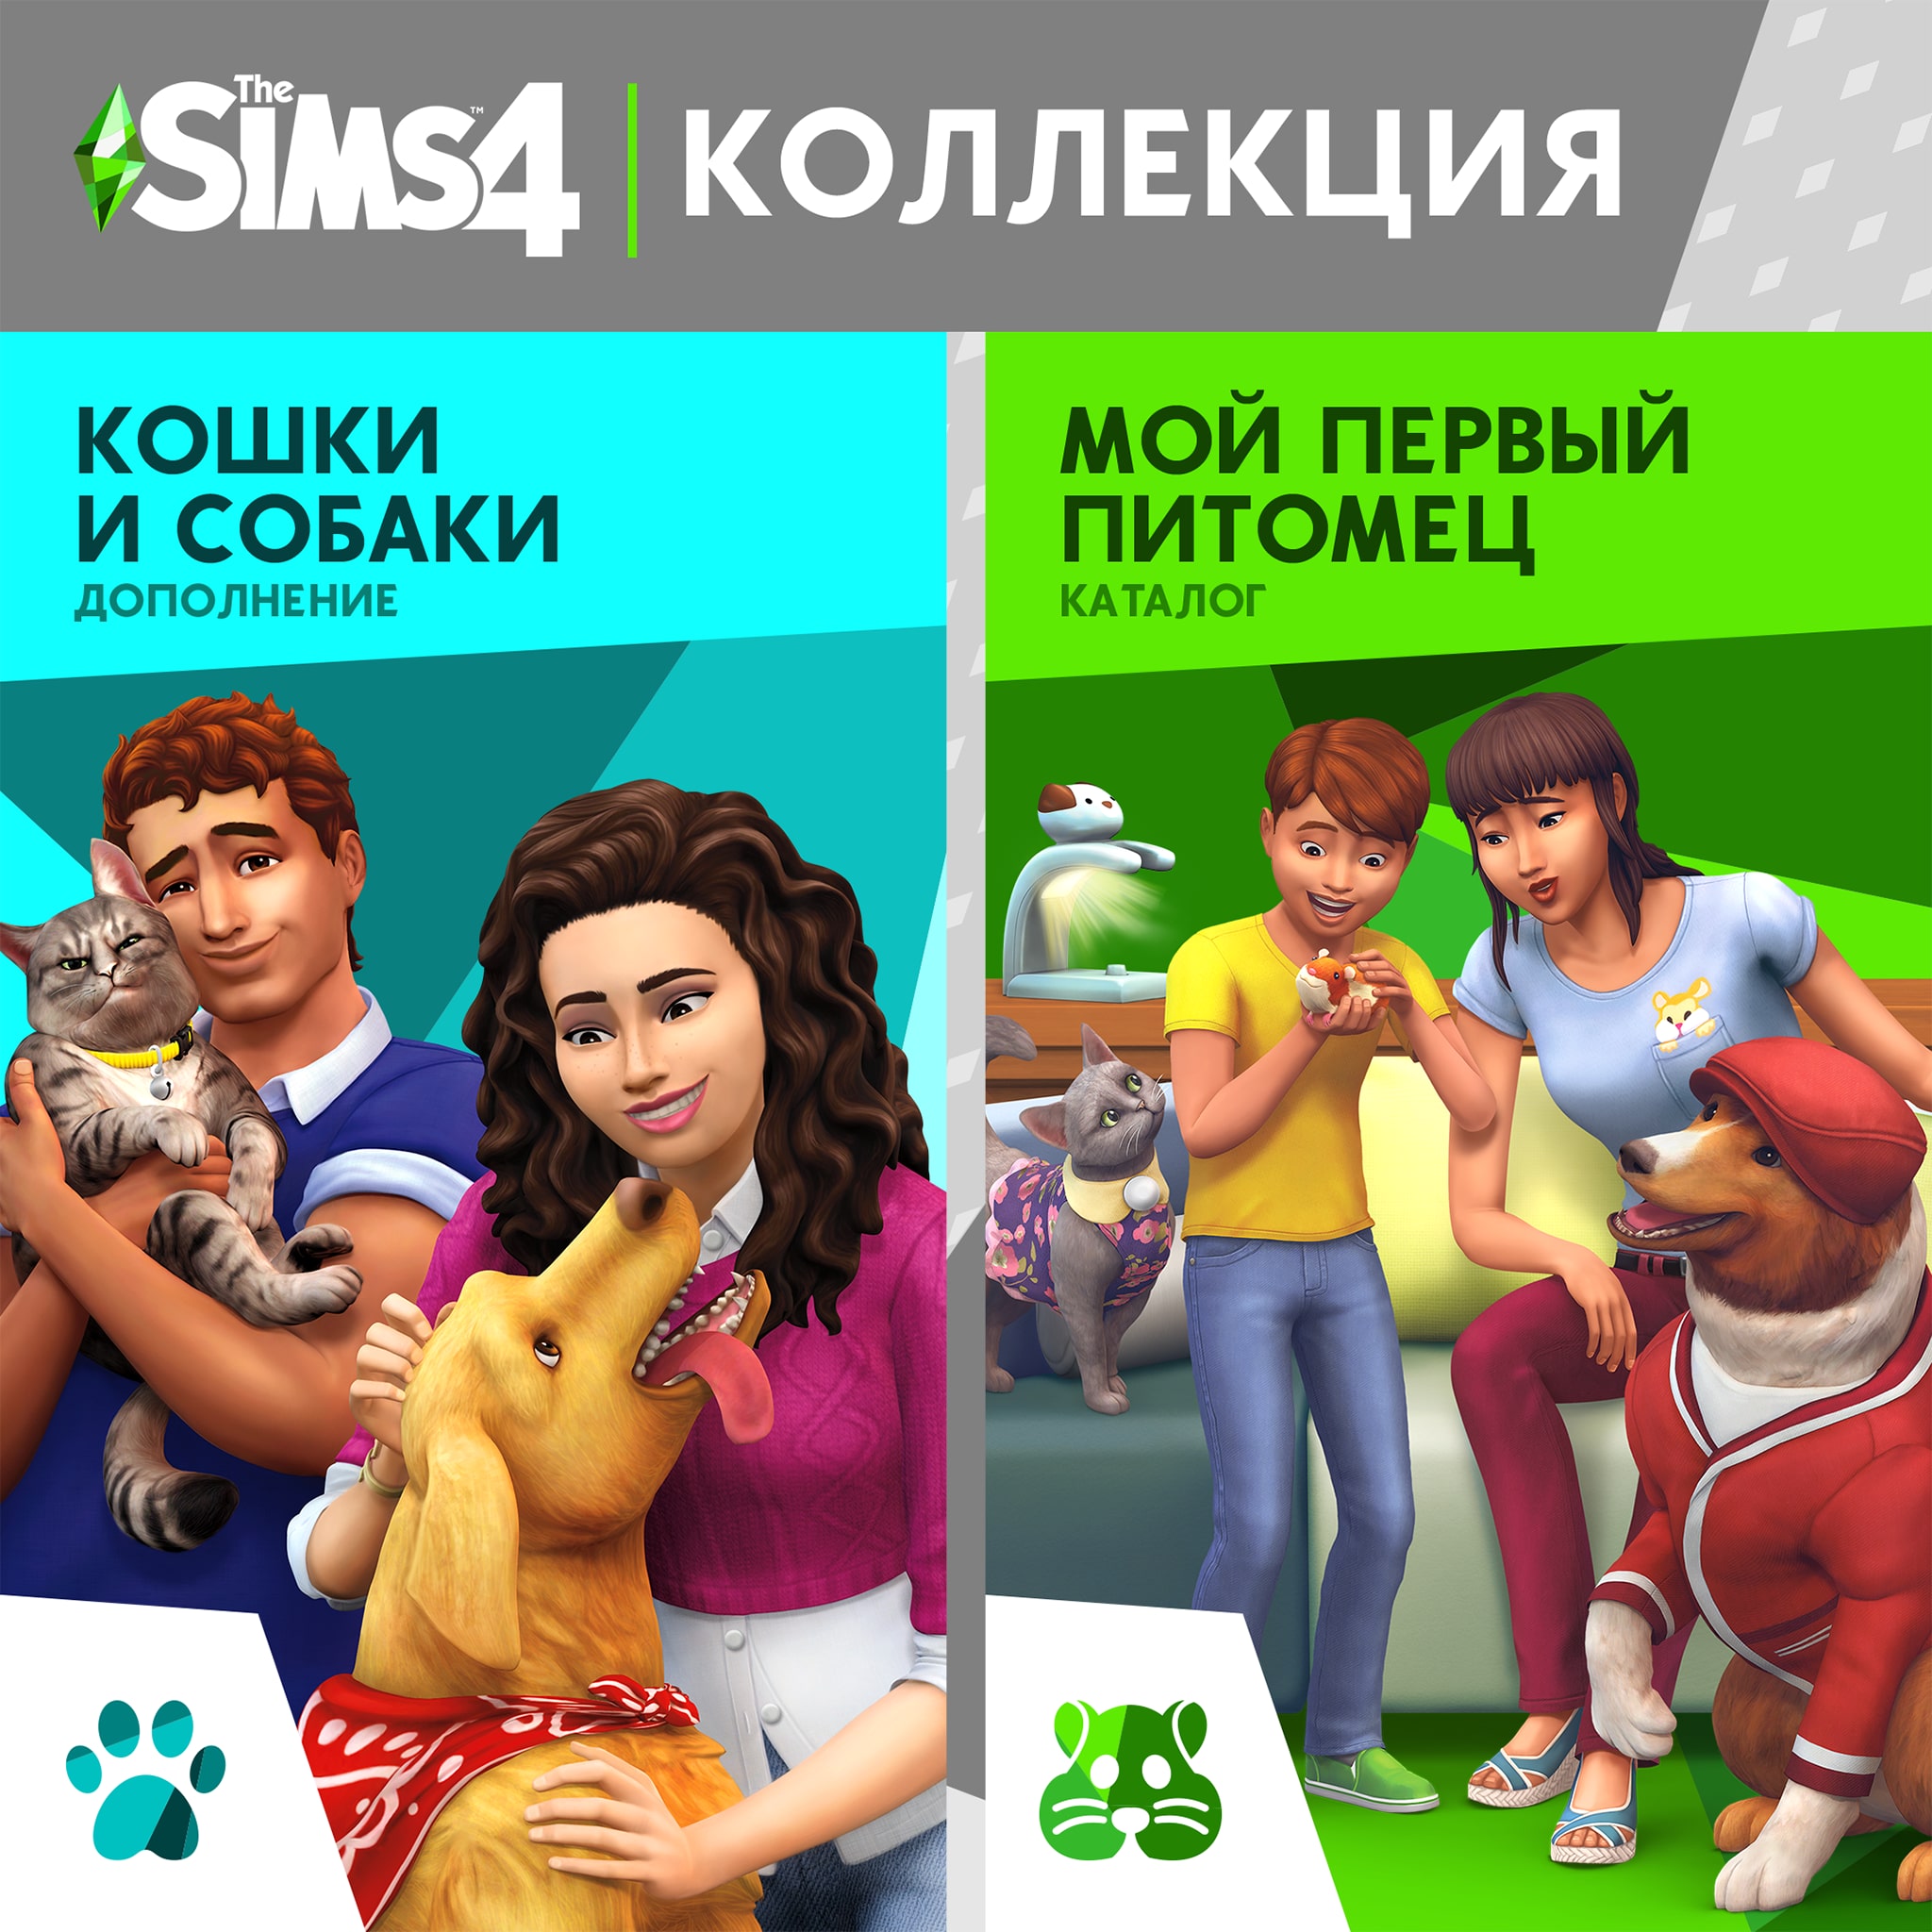 The Sims™ 4 Кошки и собаки Плюс Мой первый питомец